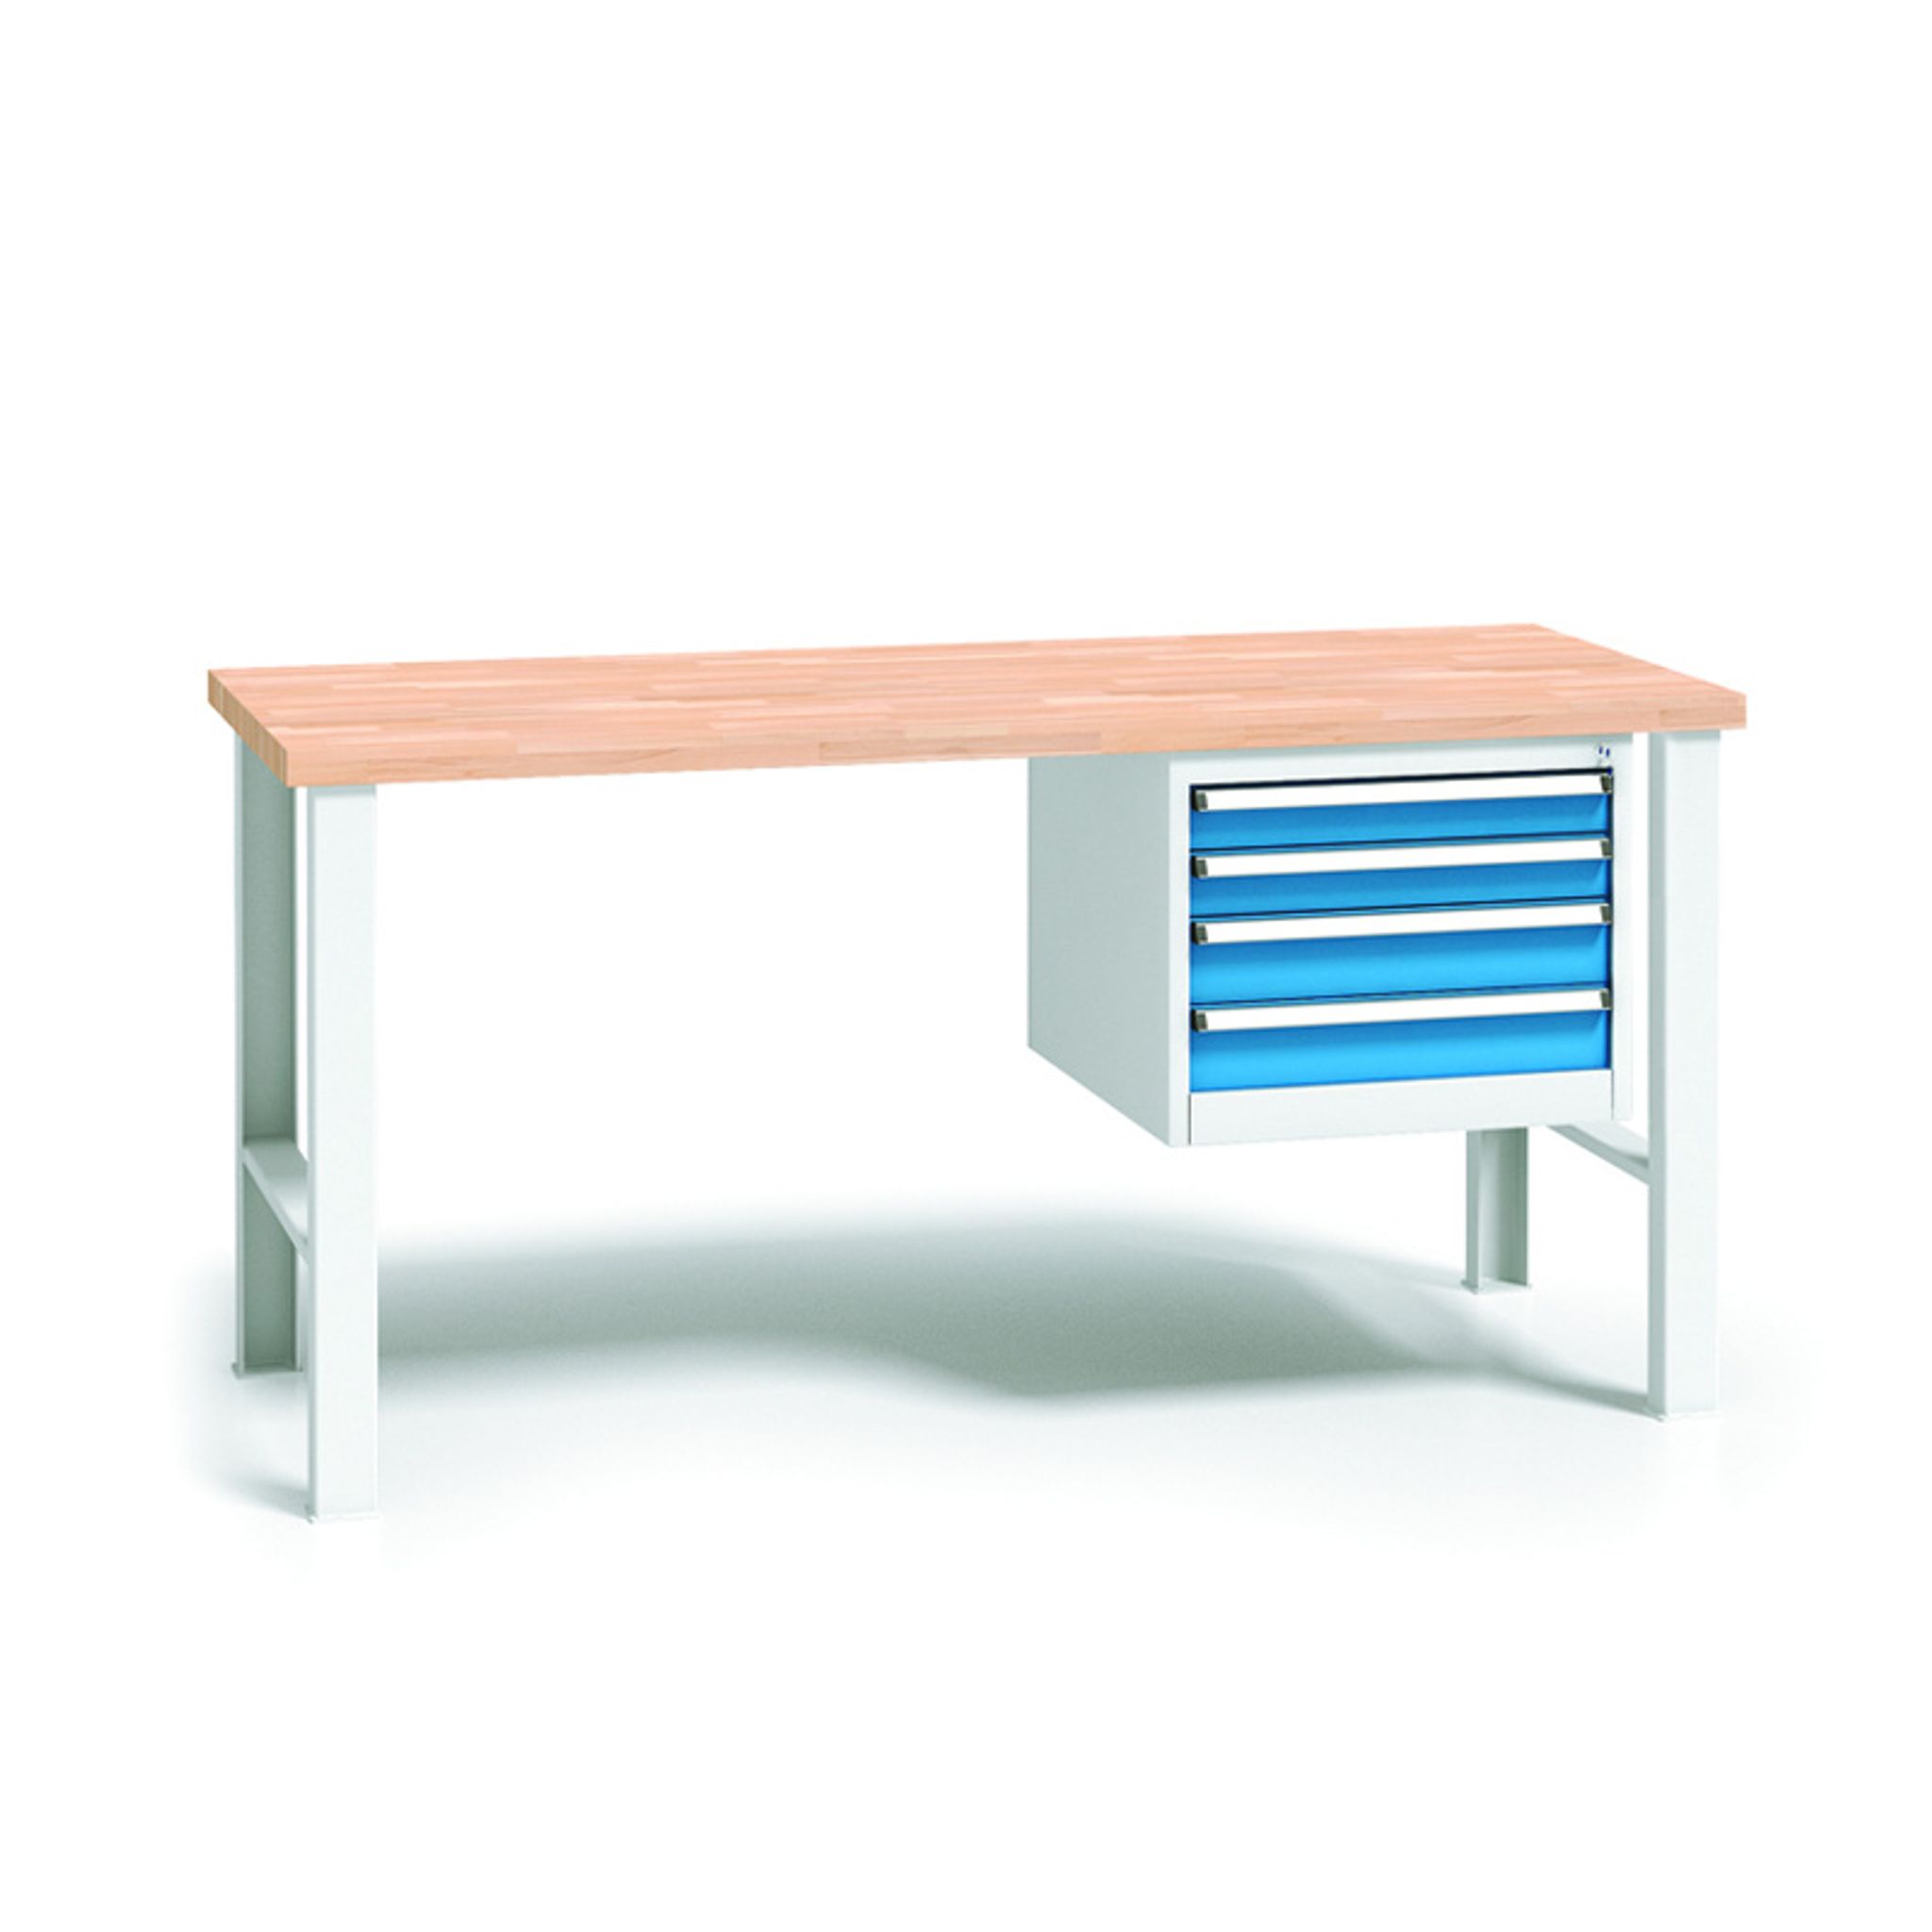 Profesjonalny stół warsztatowy z drewnianym blatem roboczym, 2000x685x840-1050 mm, 1x 4 szufladowy kontener